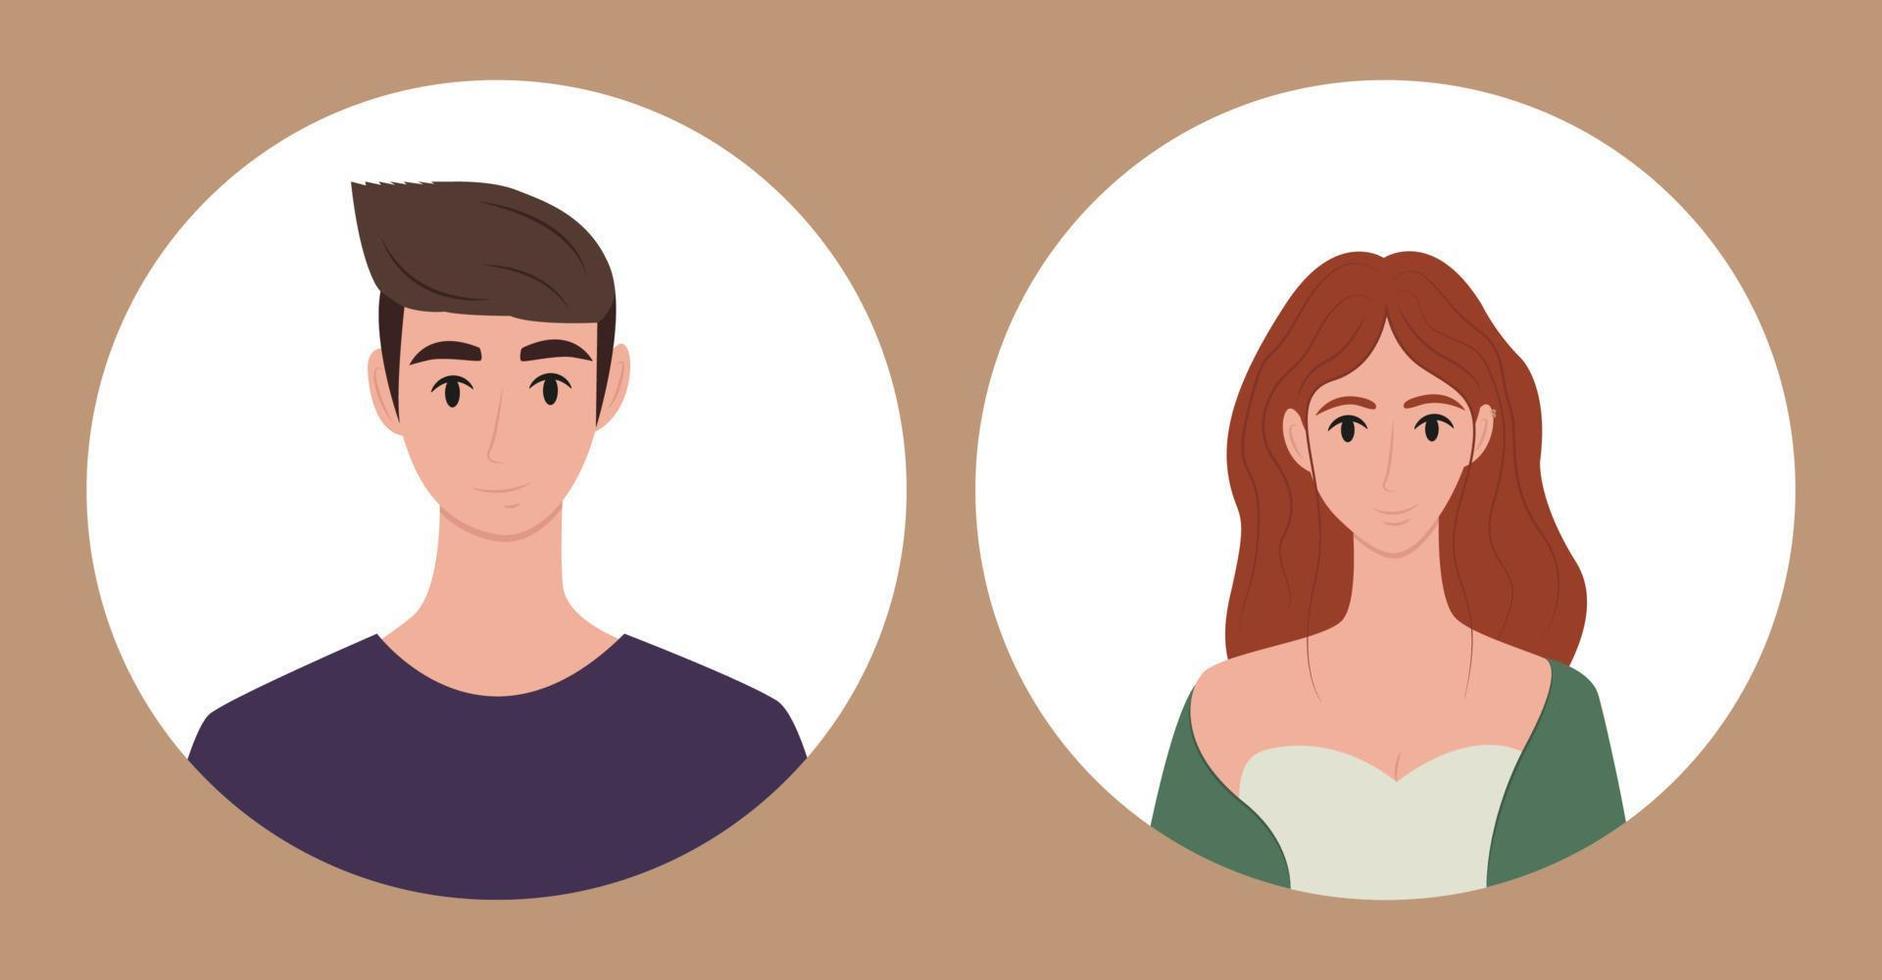 verschillende karakters portretten platte set. gezichten, avatars, portretten van een man en een vrouw. sjablonen voor ontwerp. vectorillustratie in vlakke stijl. vector